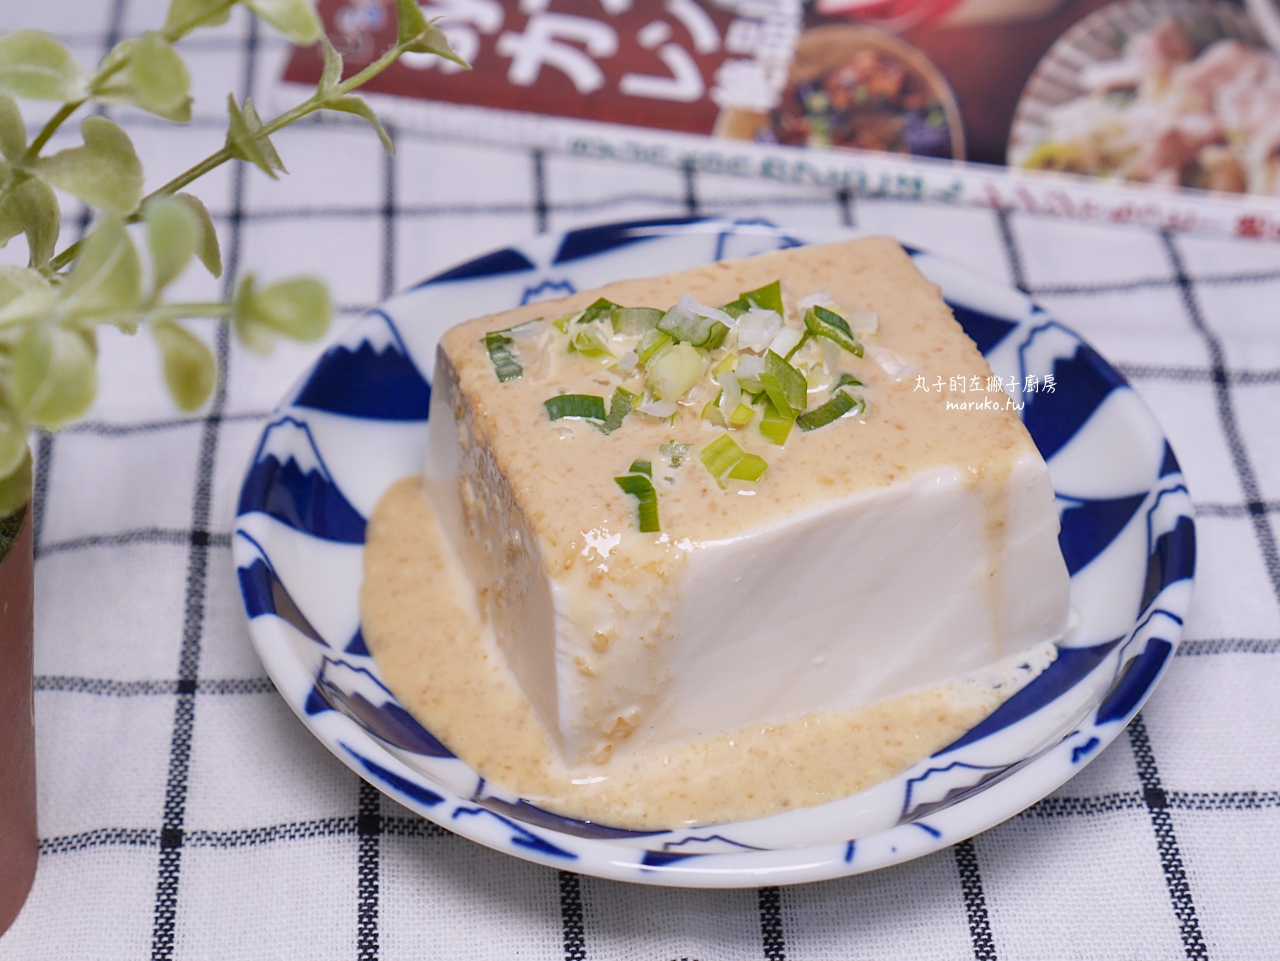 【食譜】胡麻豆腐/免開火/五分鐘輕鬆做日式胡麻醬拌麵拌生菜沙拉簡單做